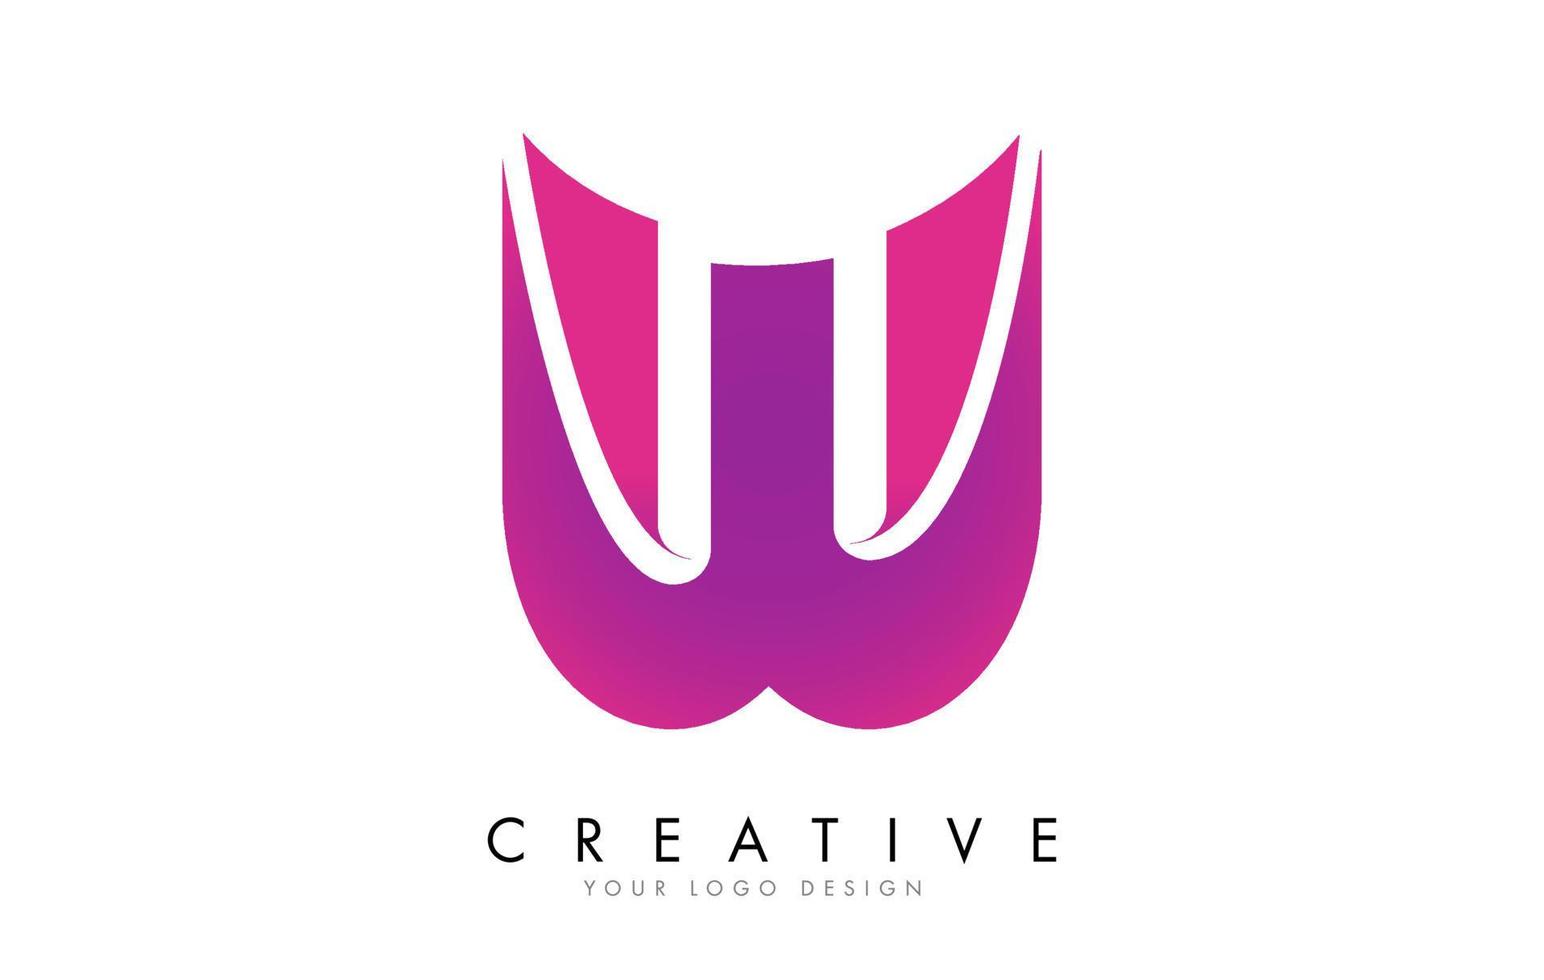 création de logo de lettre w avec effet de ruban et dégradé rose vif. vecteur